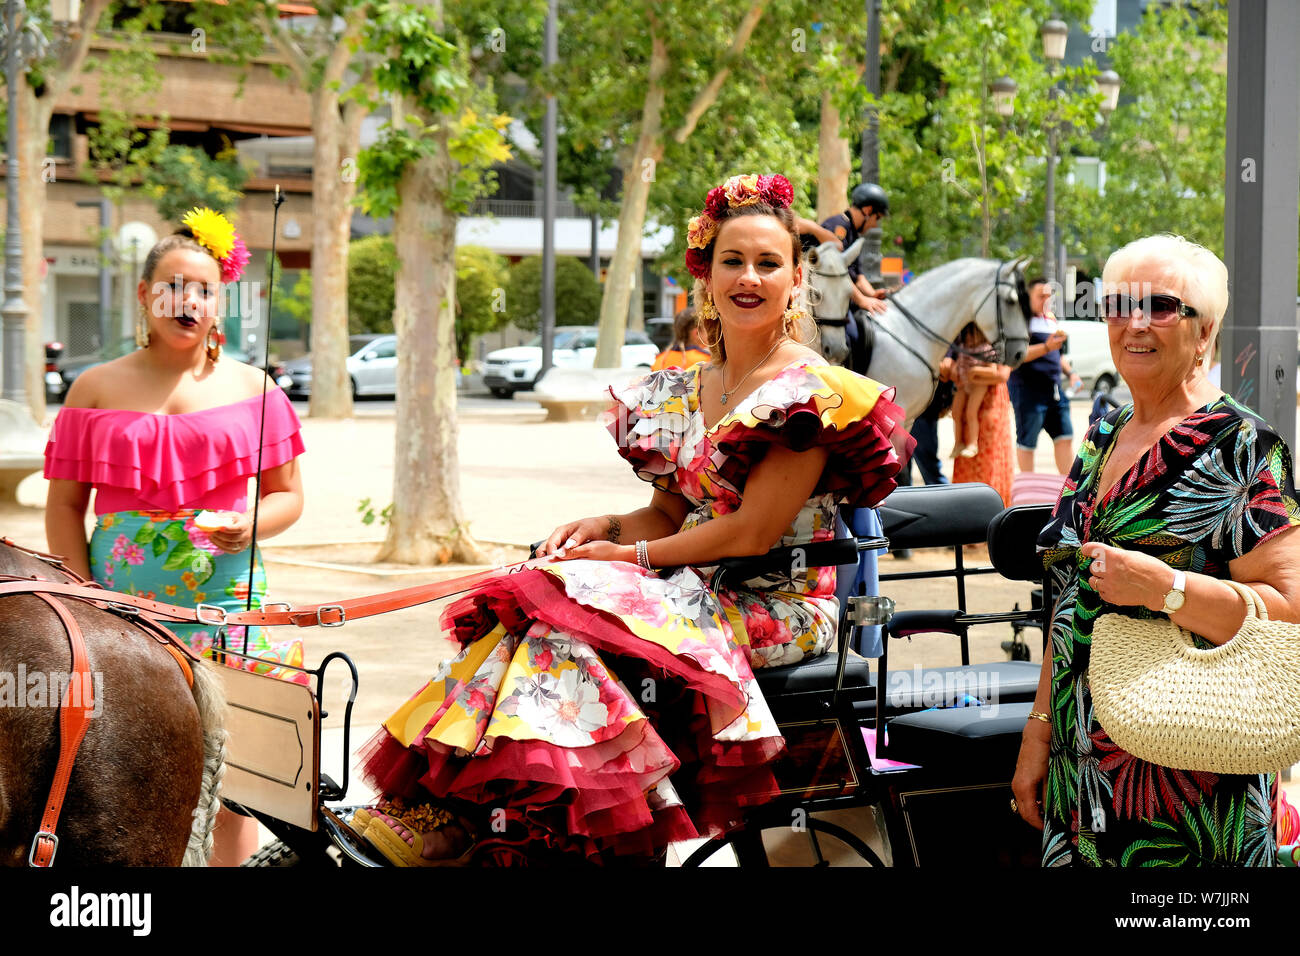 Le donne nel tradizionale costume spagnolo su un carro trainato da cavalli (enganche), parte del Corpus Domini celebrazione in Granada, Spagna. Foto Stock